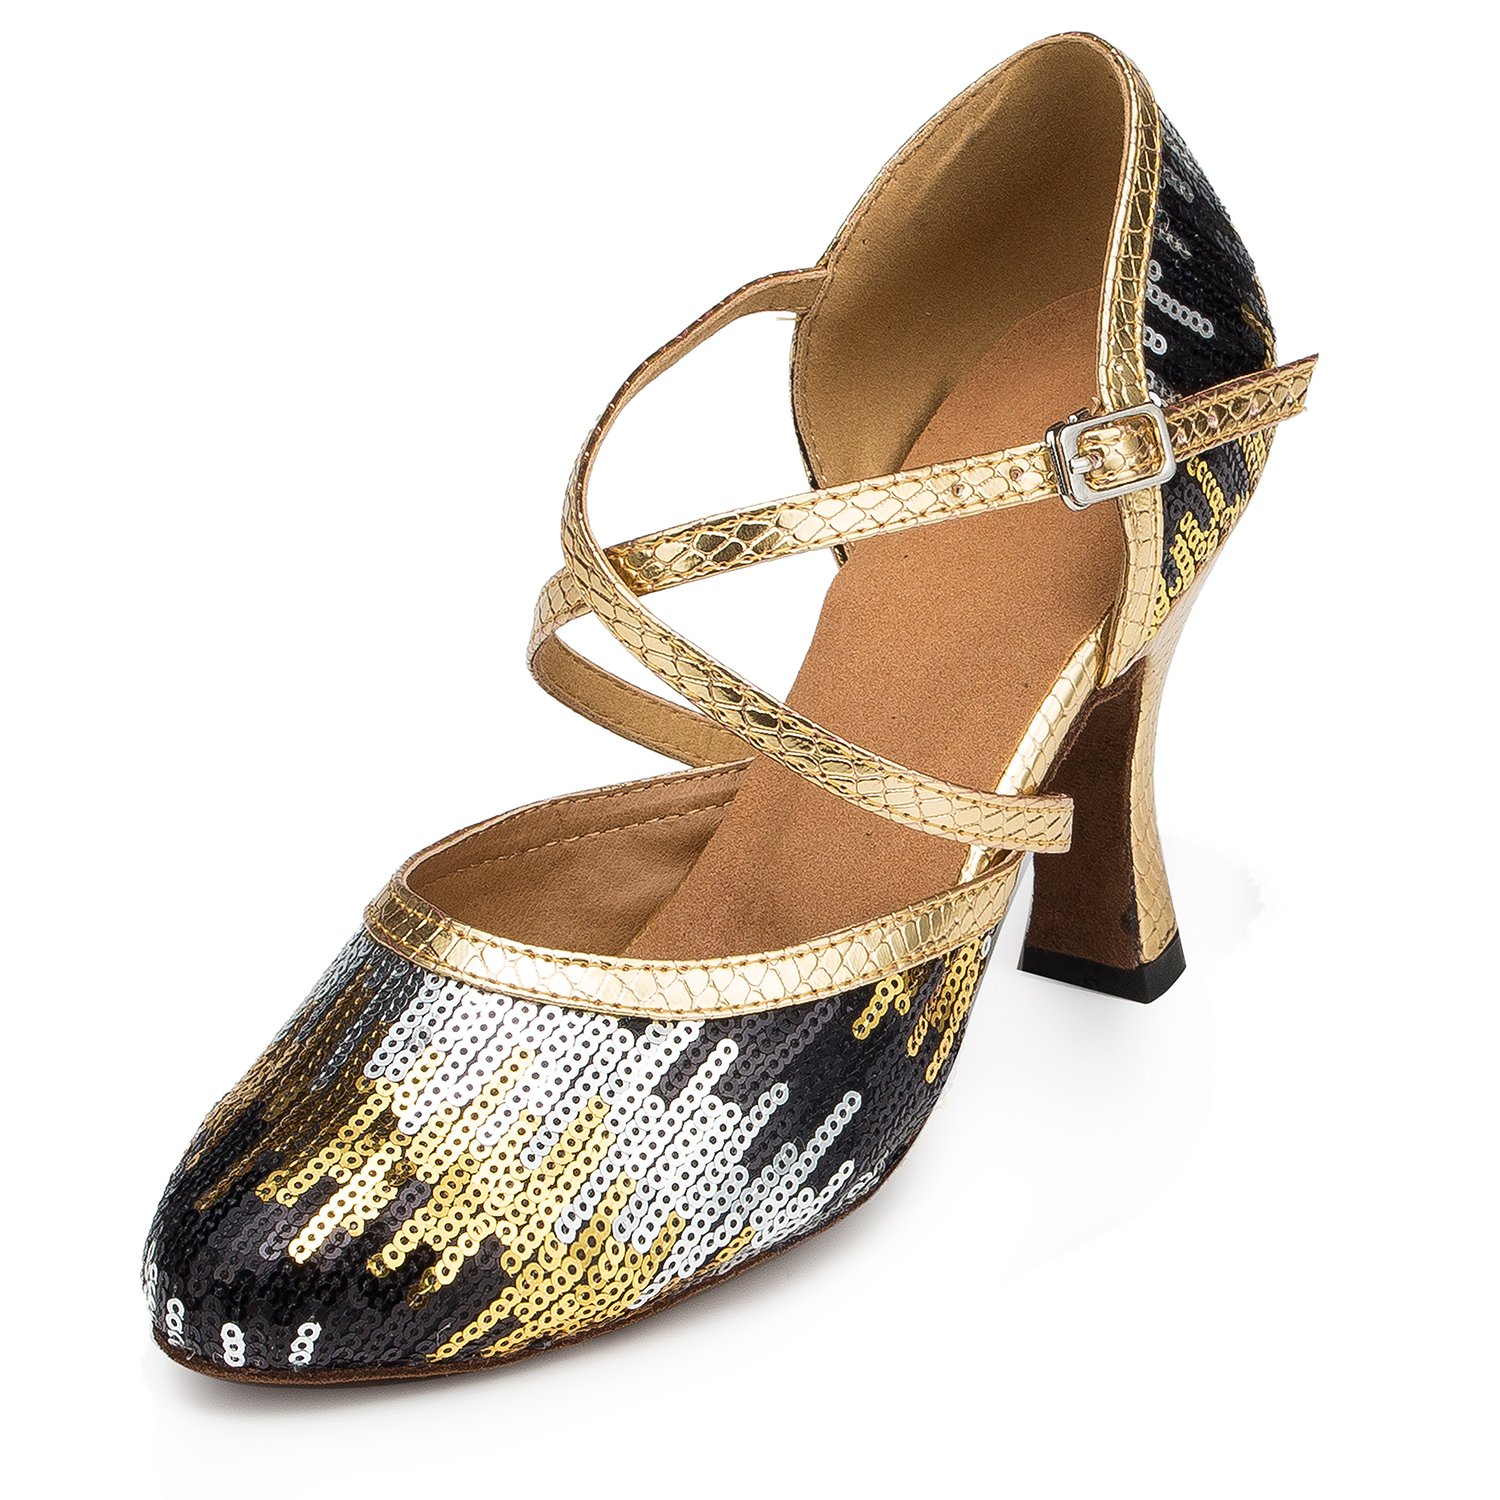 URVIP Neuheiten Frauen's Pailletten Heels Absatzschuhe Moderne Latein-Schuhe mit Knöchelriemen Tanzschuhe LD026 Gold 40 EU